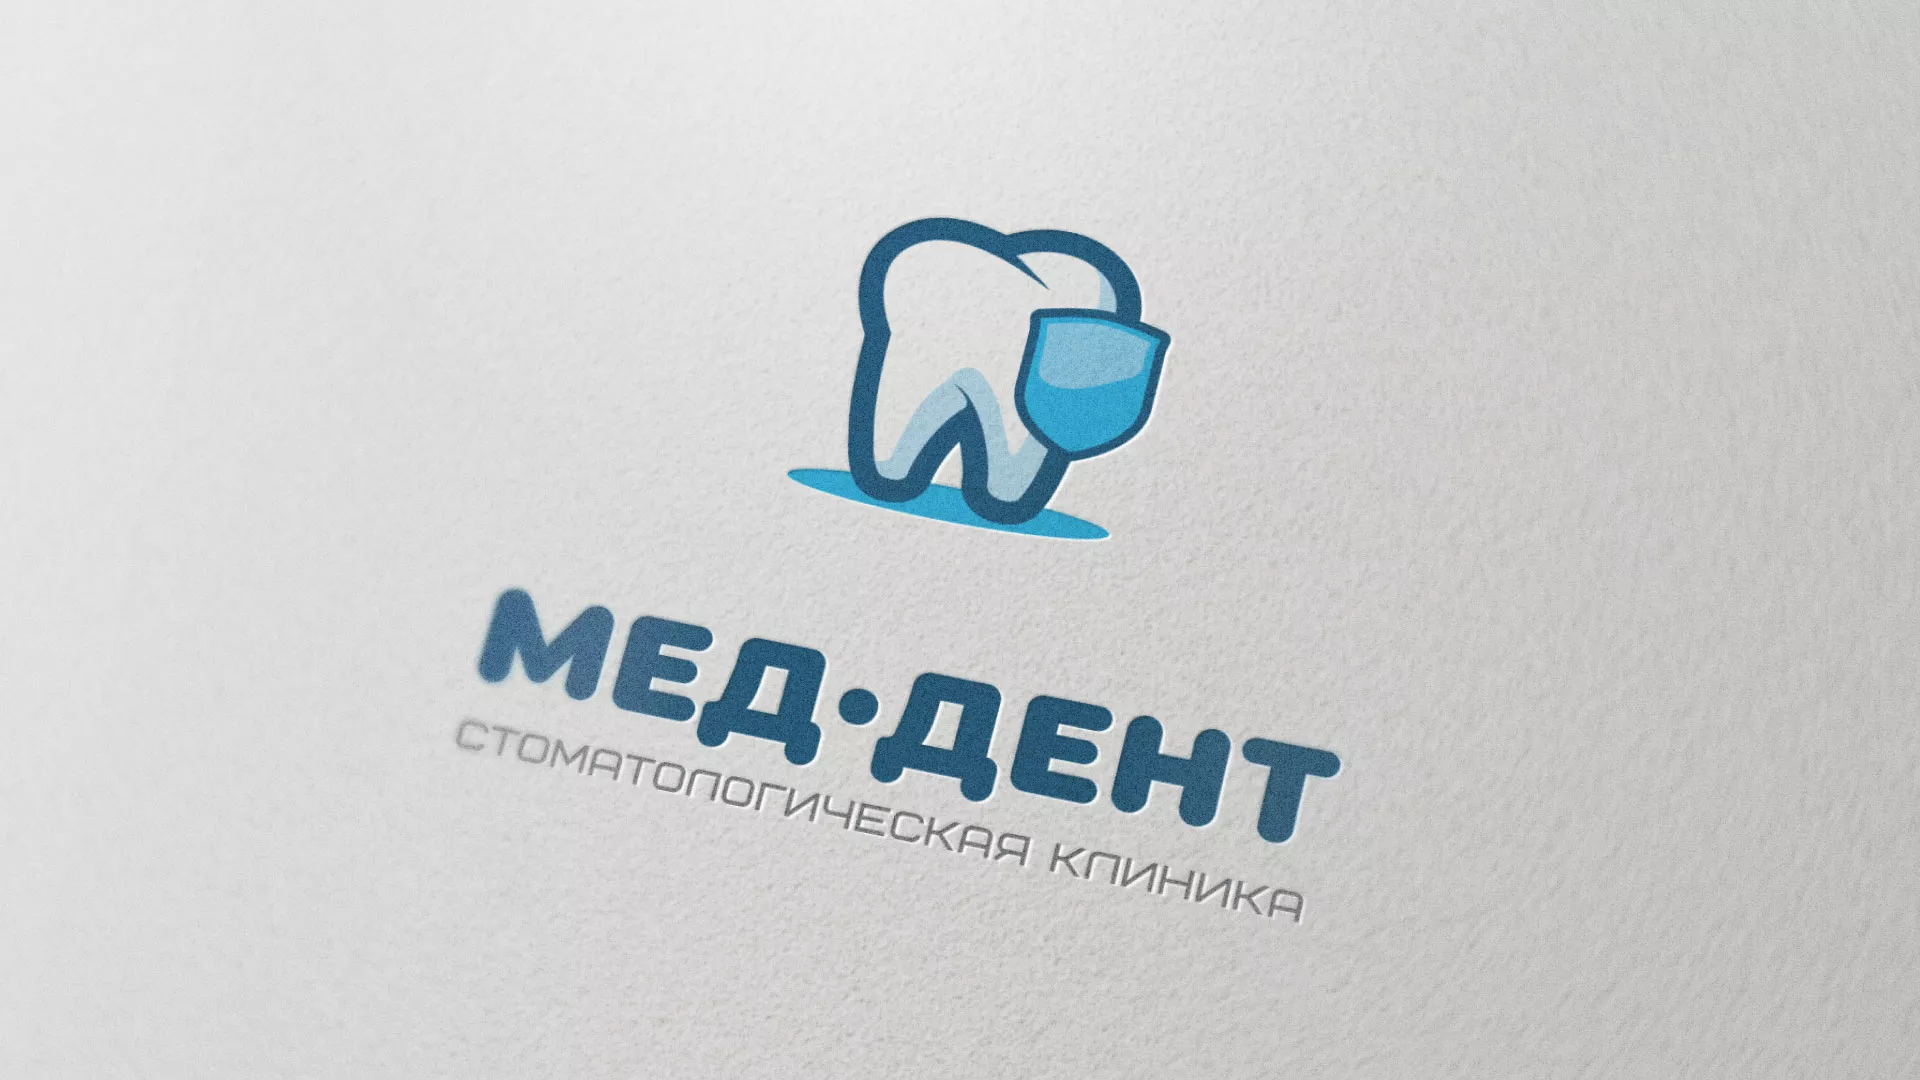 Разработка логотипа стоматологической клиники «МЕД-ДЕНТ» в Курильске